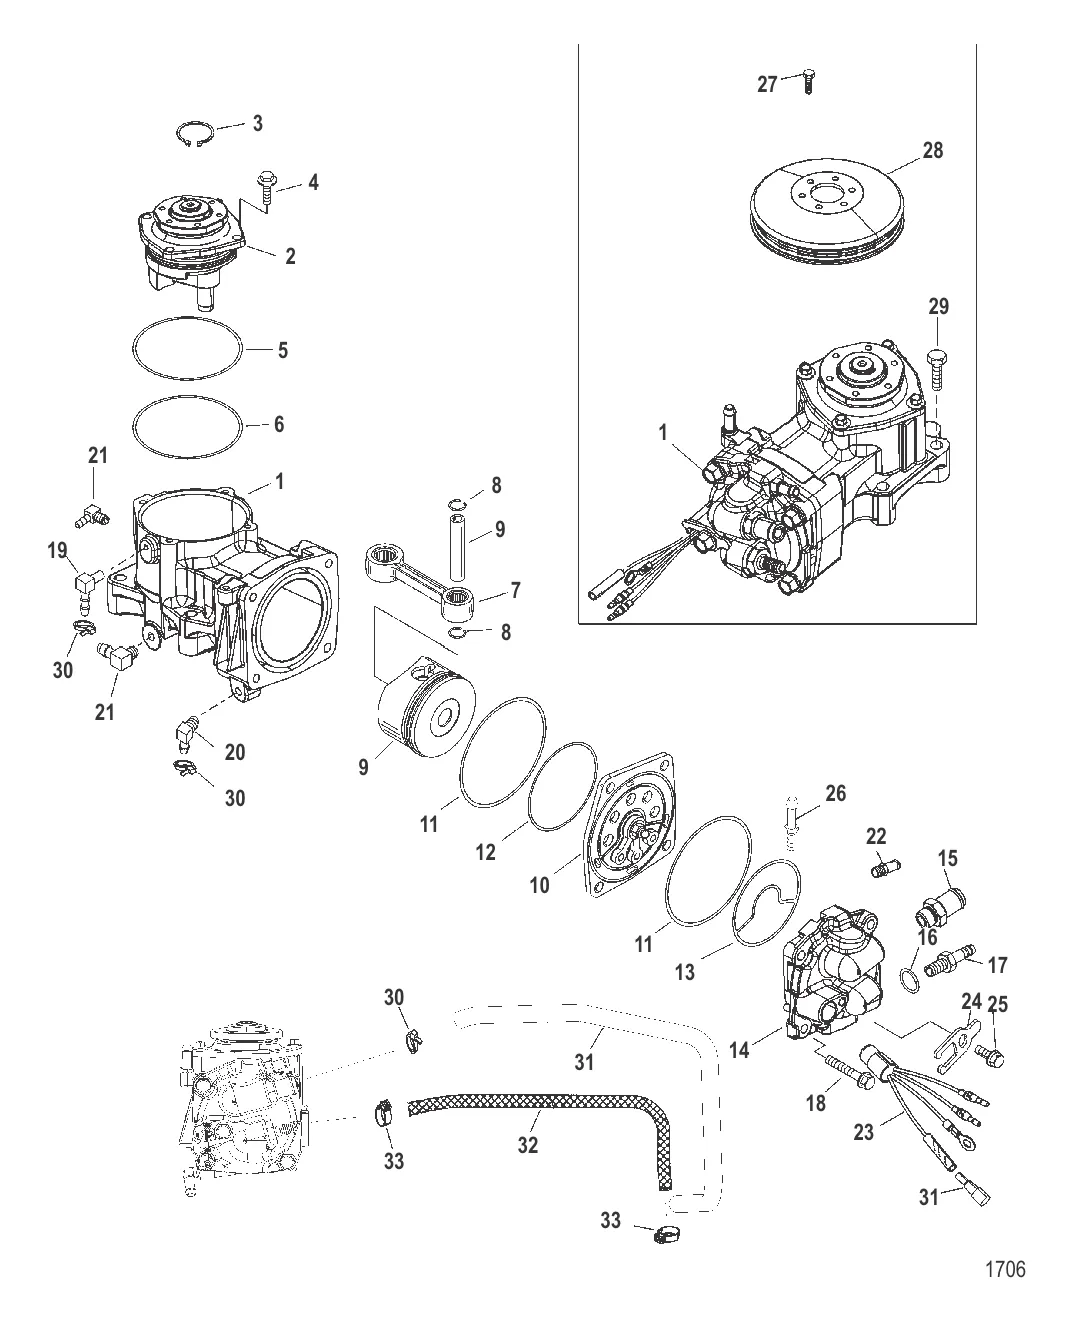 Компоненты воздушного компрессора (Конструкция II)